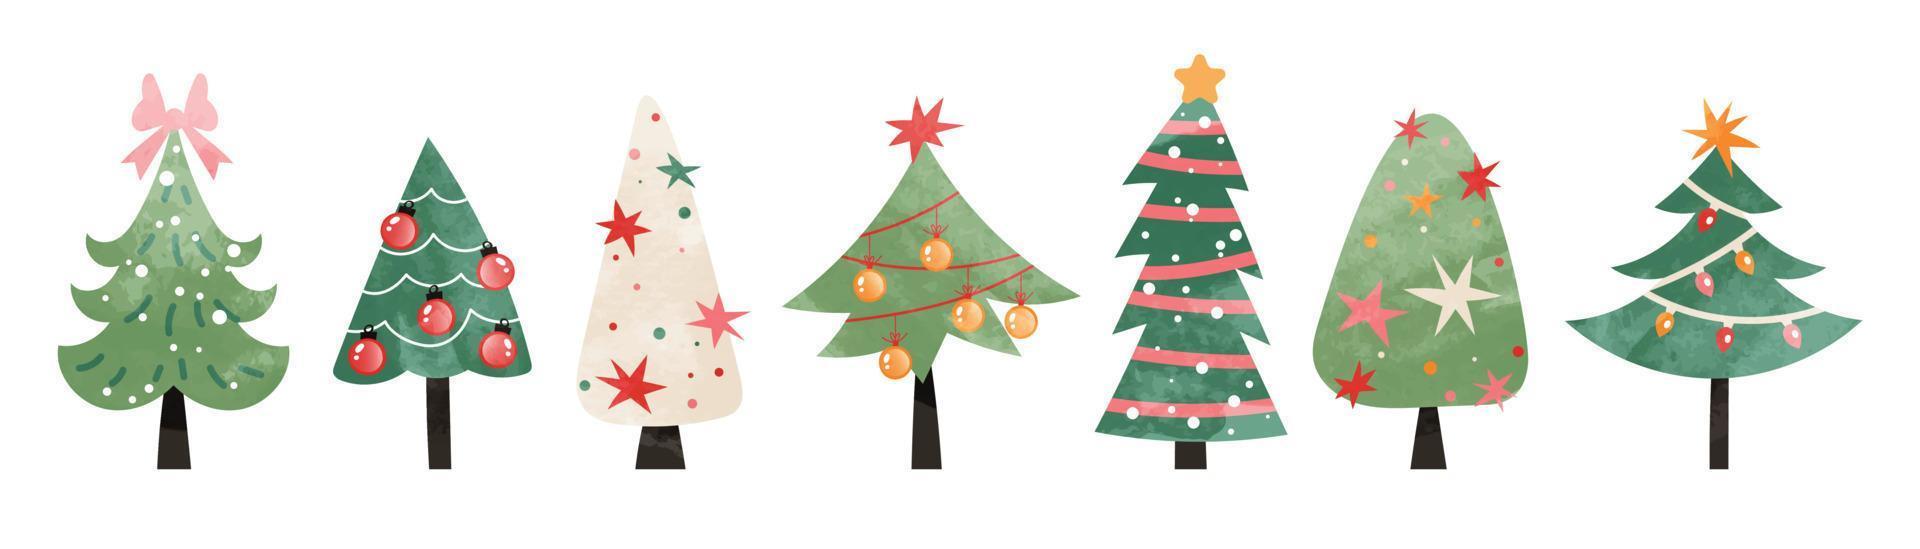 impostato di acquerello Natale albero vettore illustrazione. collezione di mano disegnato carino decorativo Natale alberi isolato su bianca sfondo. design per etichetta, decorazione, carta, manifesto, opera d'arte.